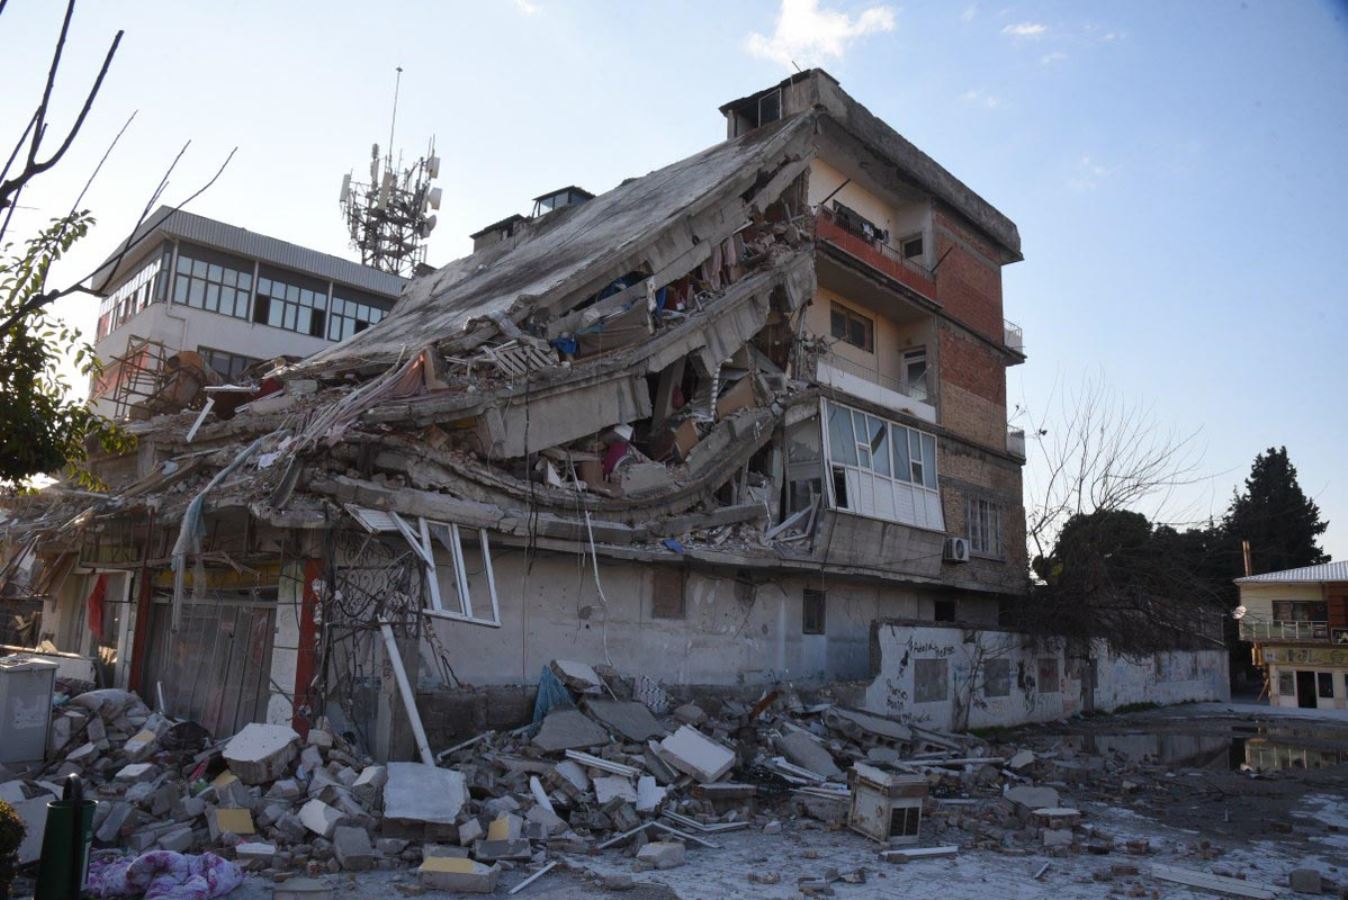 <p><strong>OSMANİYE: </strong></p>
<p>Osmaniye’de toplam 28 bin 317 binada bulunan 91 bin 999 bağımsız birimde hasar tespit çalışması yapıldı.  </p>
<p>2 bin 122 binadaki 8 bin 491 bağımsız birimin acil yıkılması gereken ağır hasarlı ve yıkık olduğu tespit edildi. 218 binadaki 1717 bağımsız birimin orta hasarlı, 6 bin 925 binada bulunan 36 bin 518 bağımsız birimin az hasarlı, 17 bin 529 binadaki 41 bin 839 bağımsız birimin hasarsız olduğu tespit edildi.  </p>